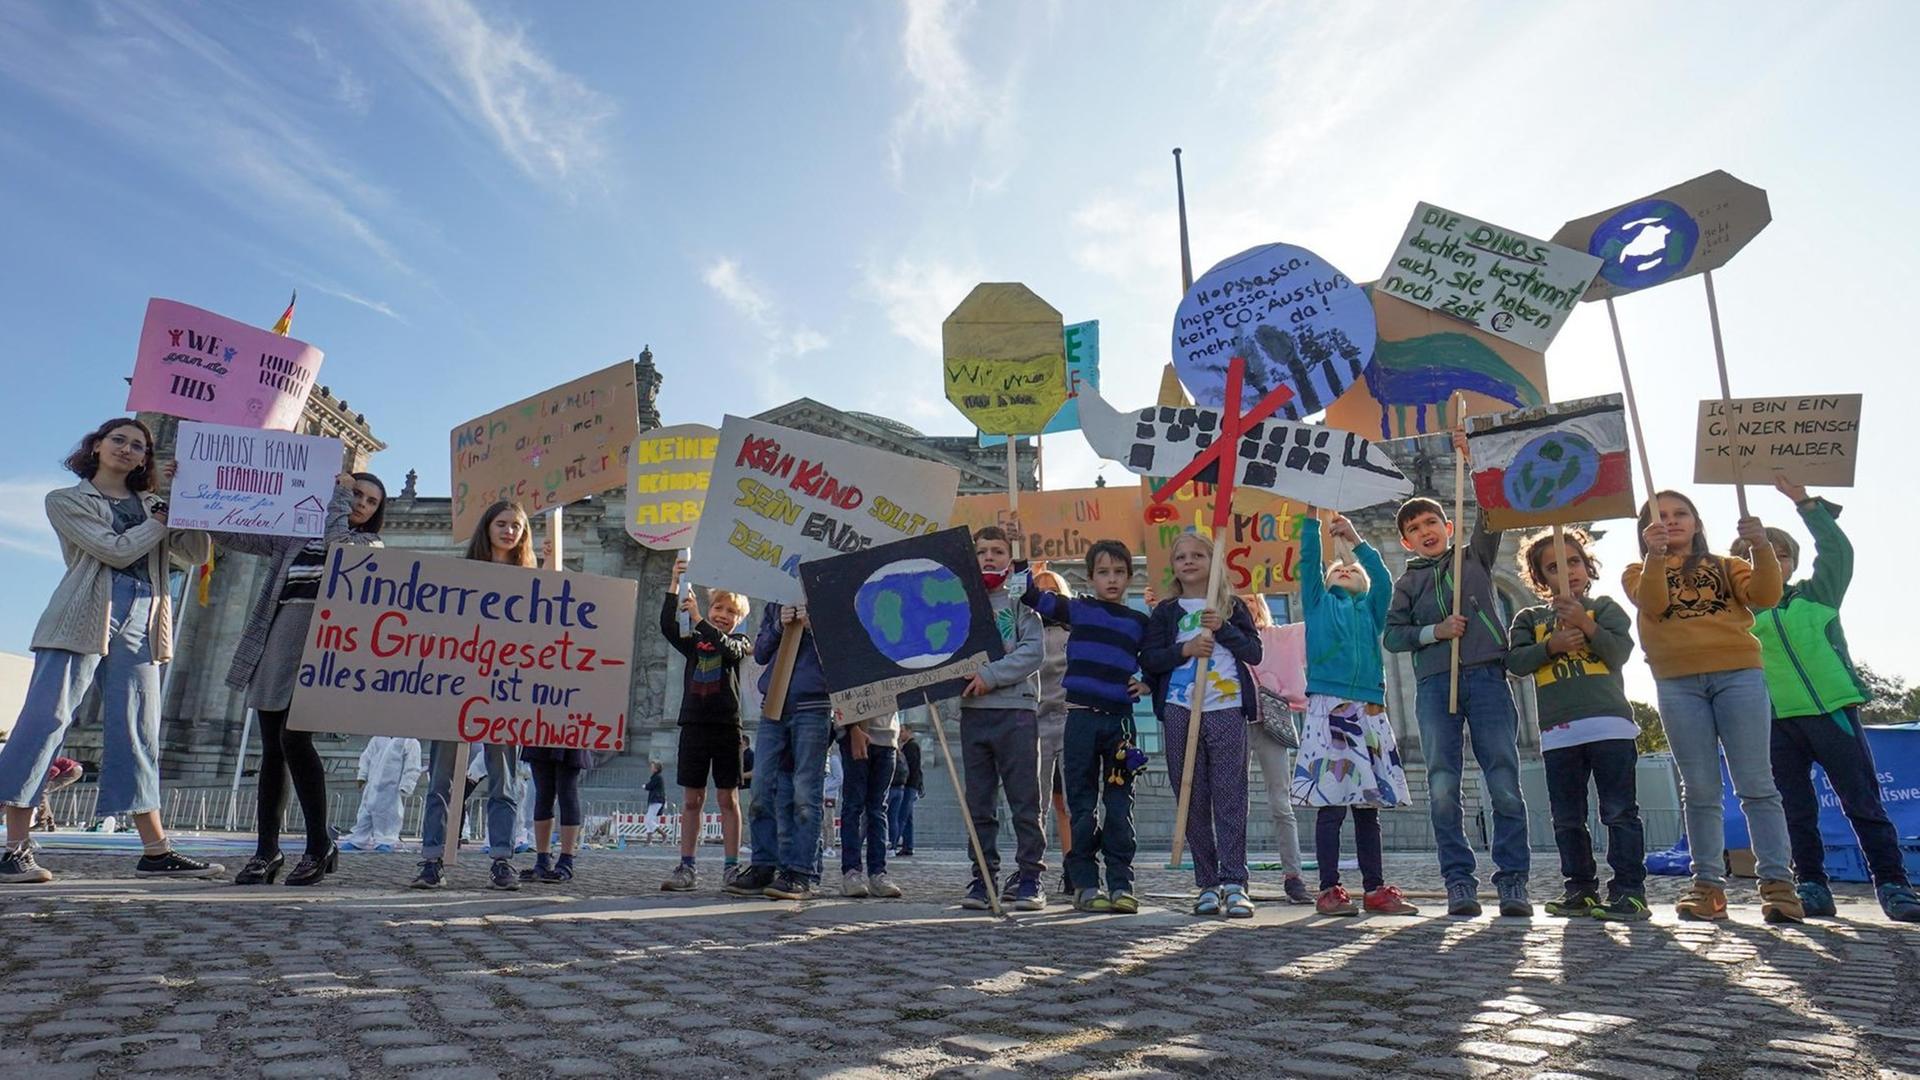 Kinder halten anlässlich des Weltkindertags vor dem Reichstag Transparente mit ihren Forderungen (unter anderem: "Kinderrechte ins Grundgesetz - alles andere ist nur Geschwätz") in die Höhe.